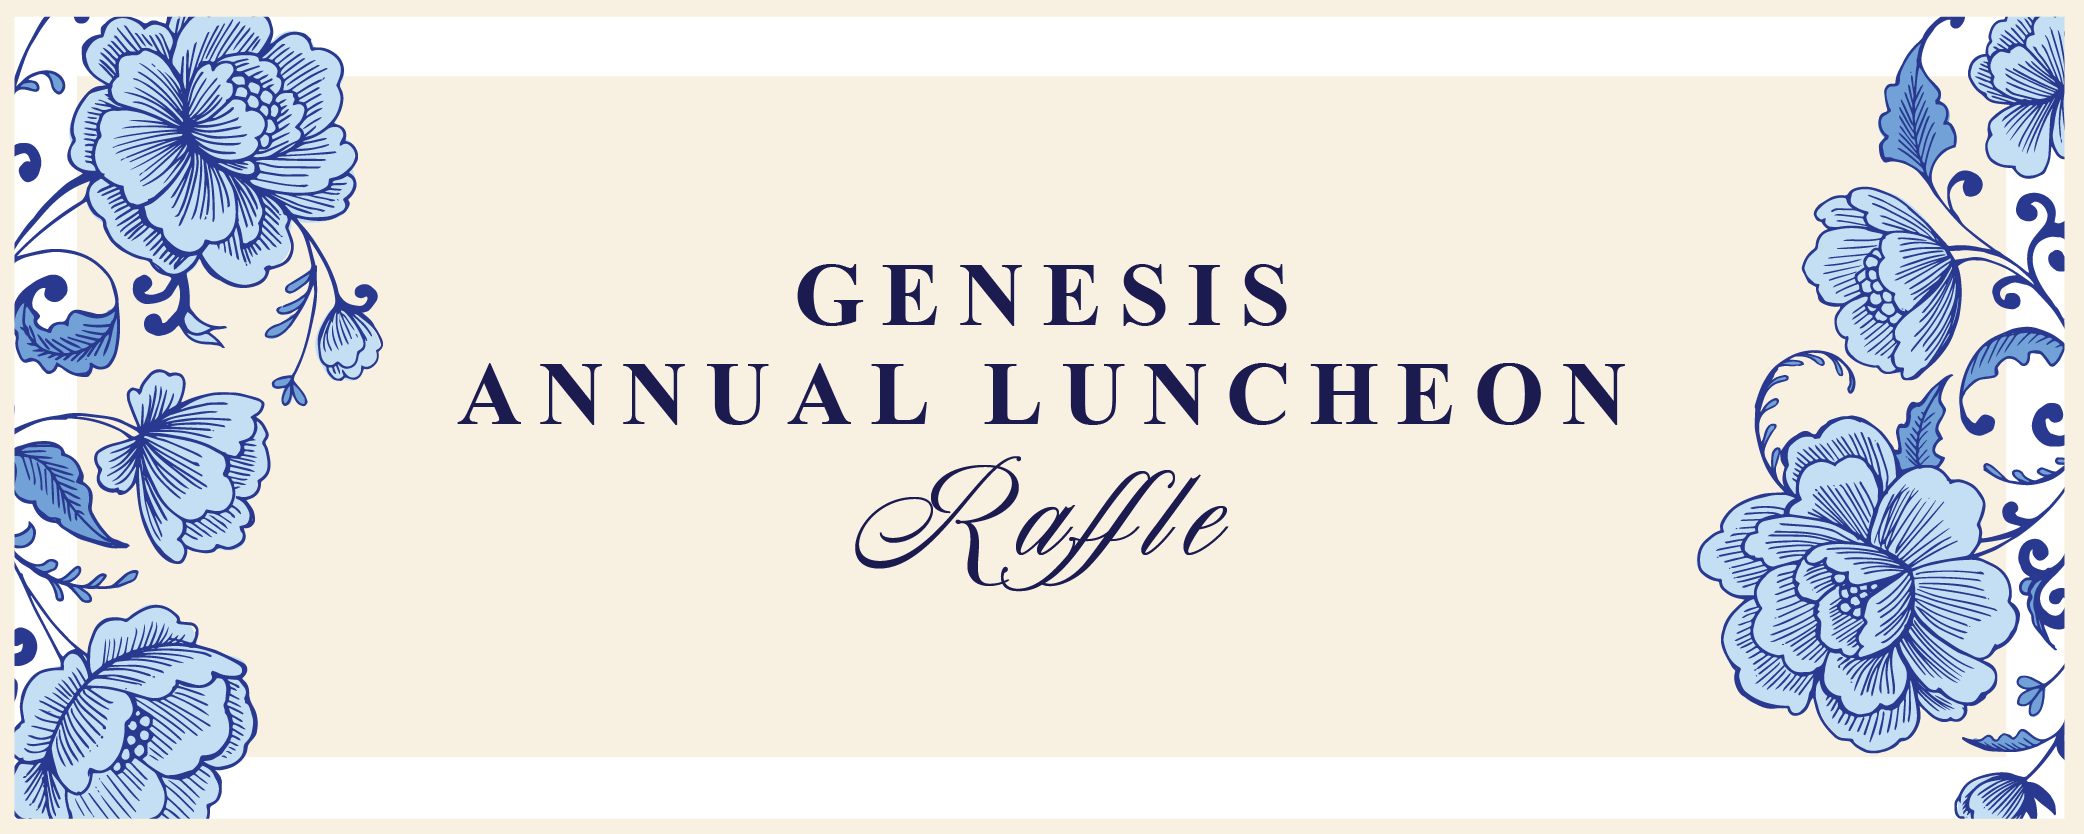 Genesis Luncheon Raffle